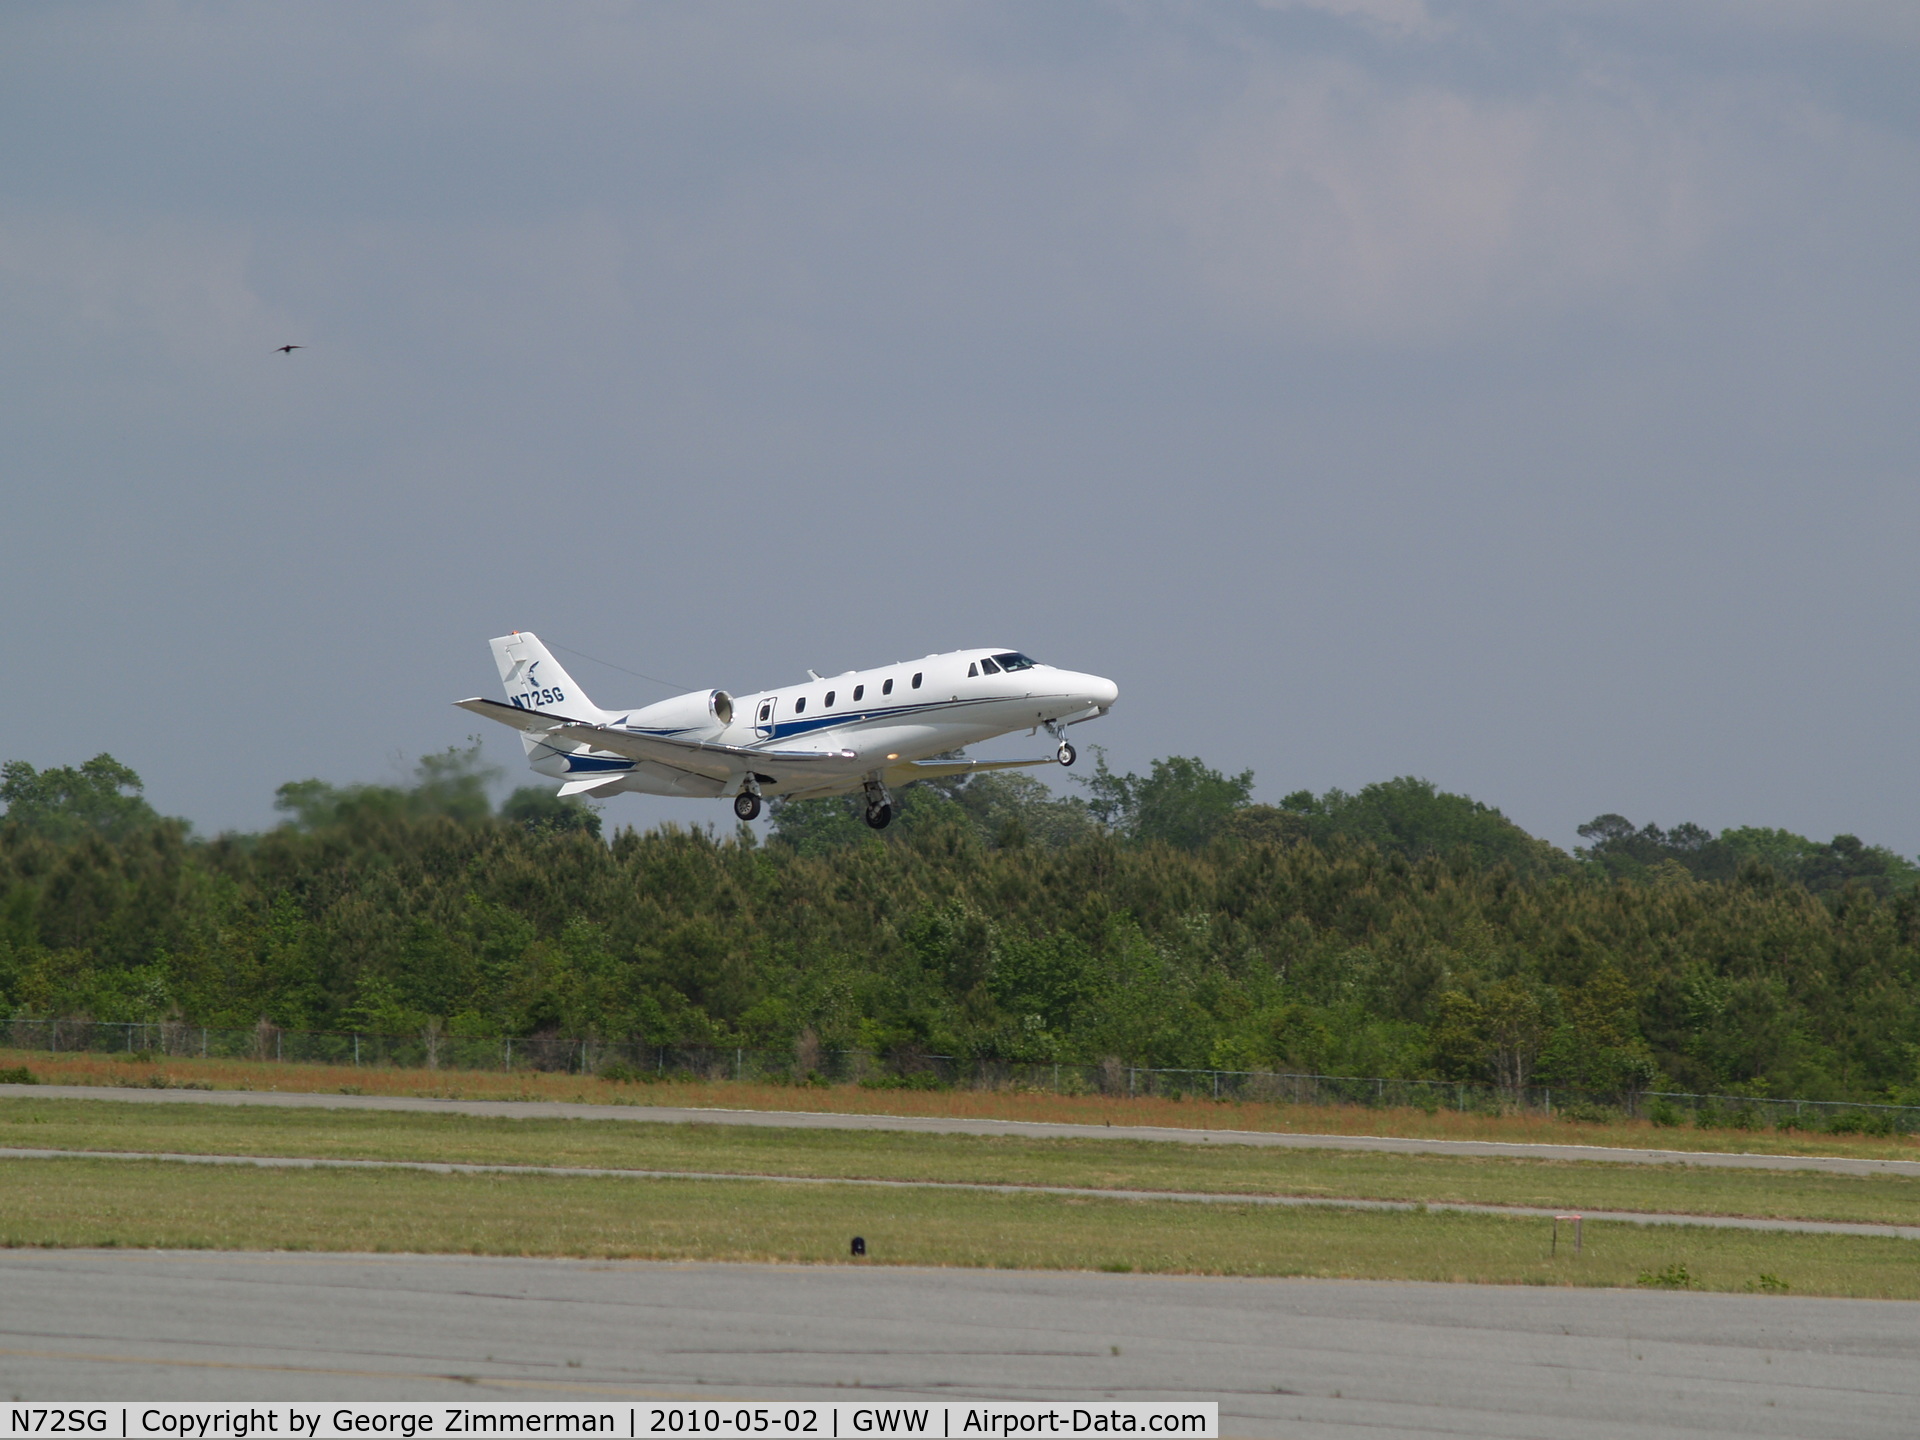 N72SG, 2004 Cessna 560XL C/N 560-5508, Departure